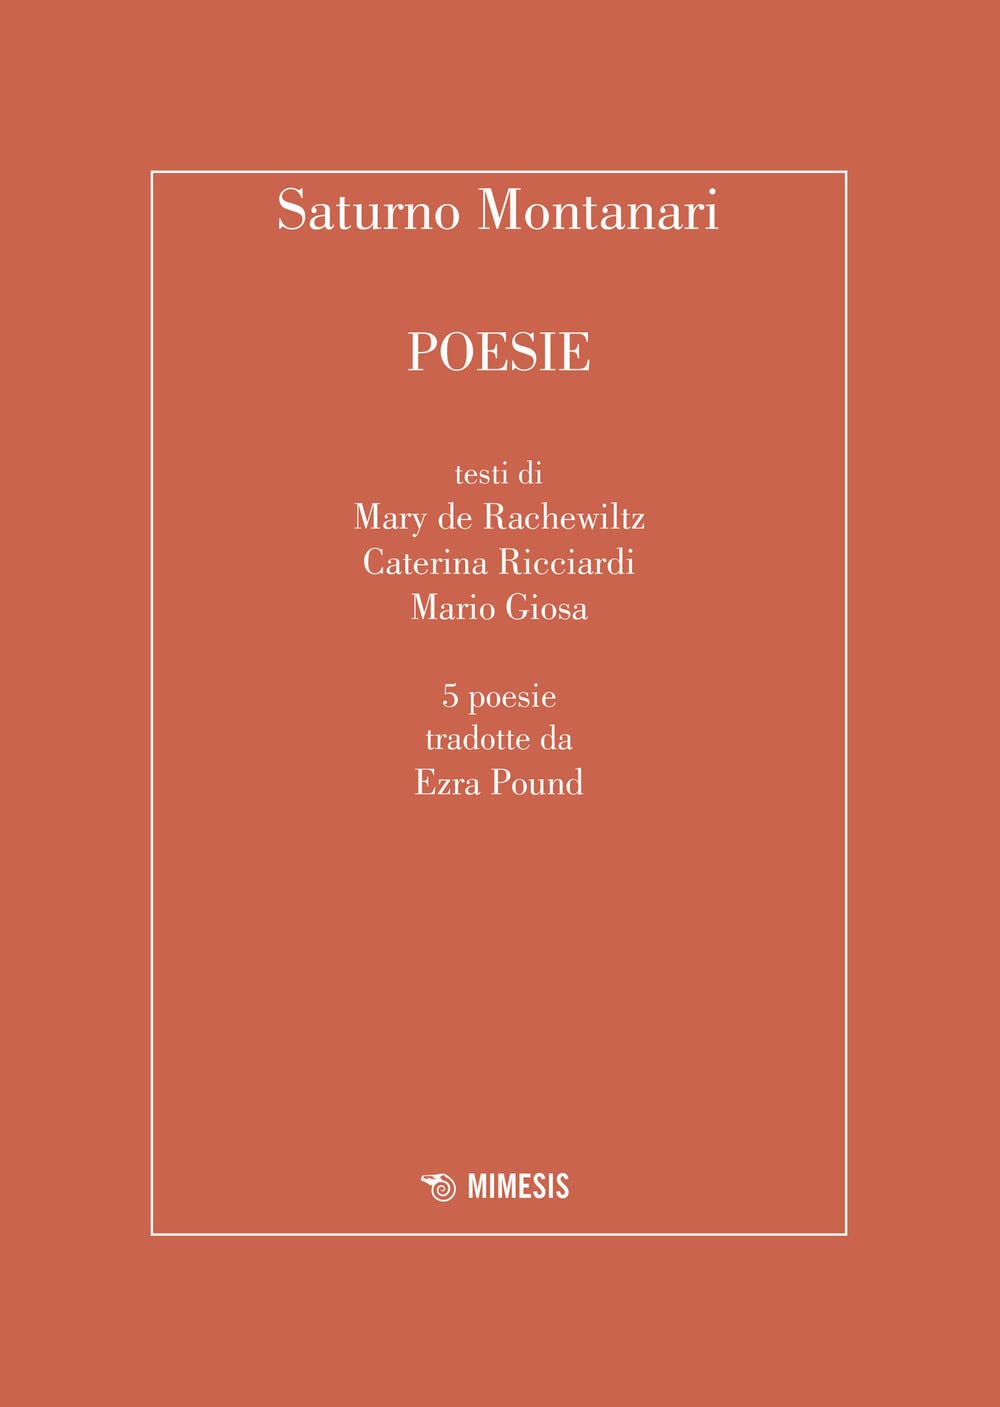 Libri Montanari Saturno - Poesie NUOVO SIGILLATO, EDIZIONE DEL 24/02/2023 SUBITO DISPONIBILE